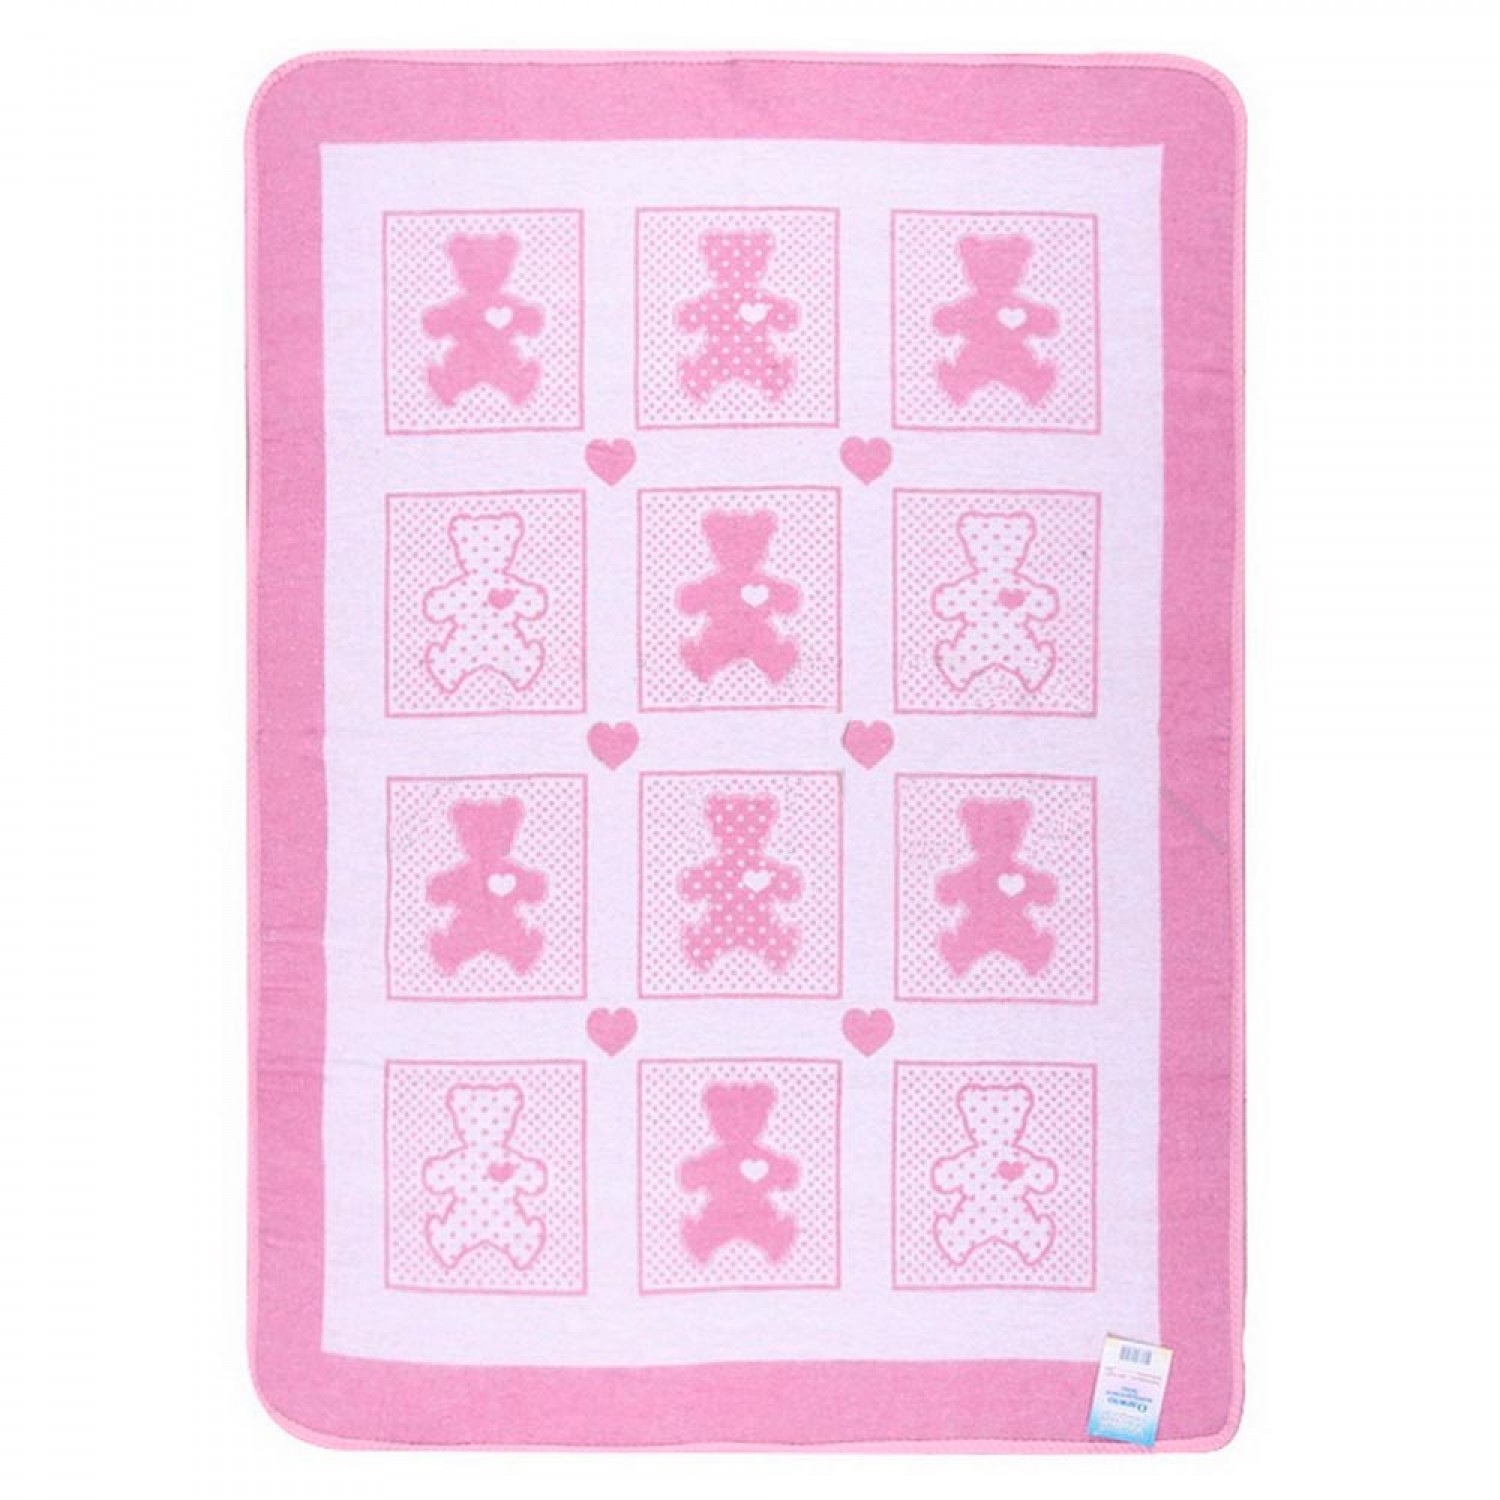 Детское одеяло легкое Барни цвет: бело-розовый (100х140 см), размер 100х140 см